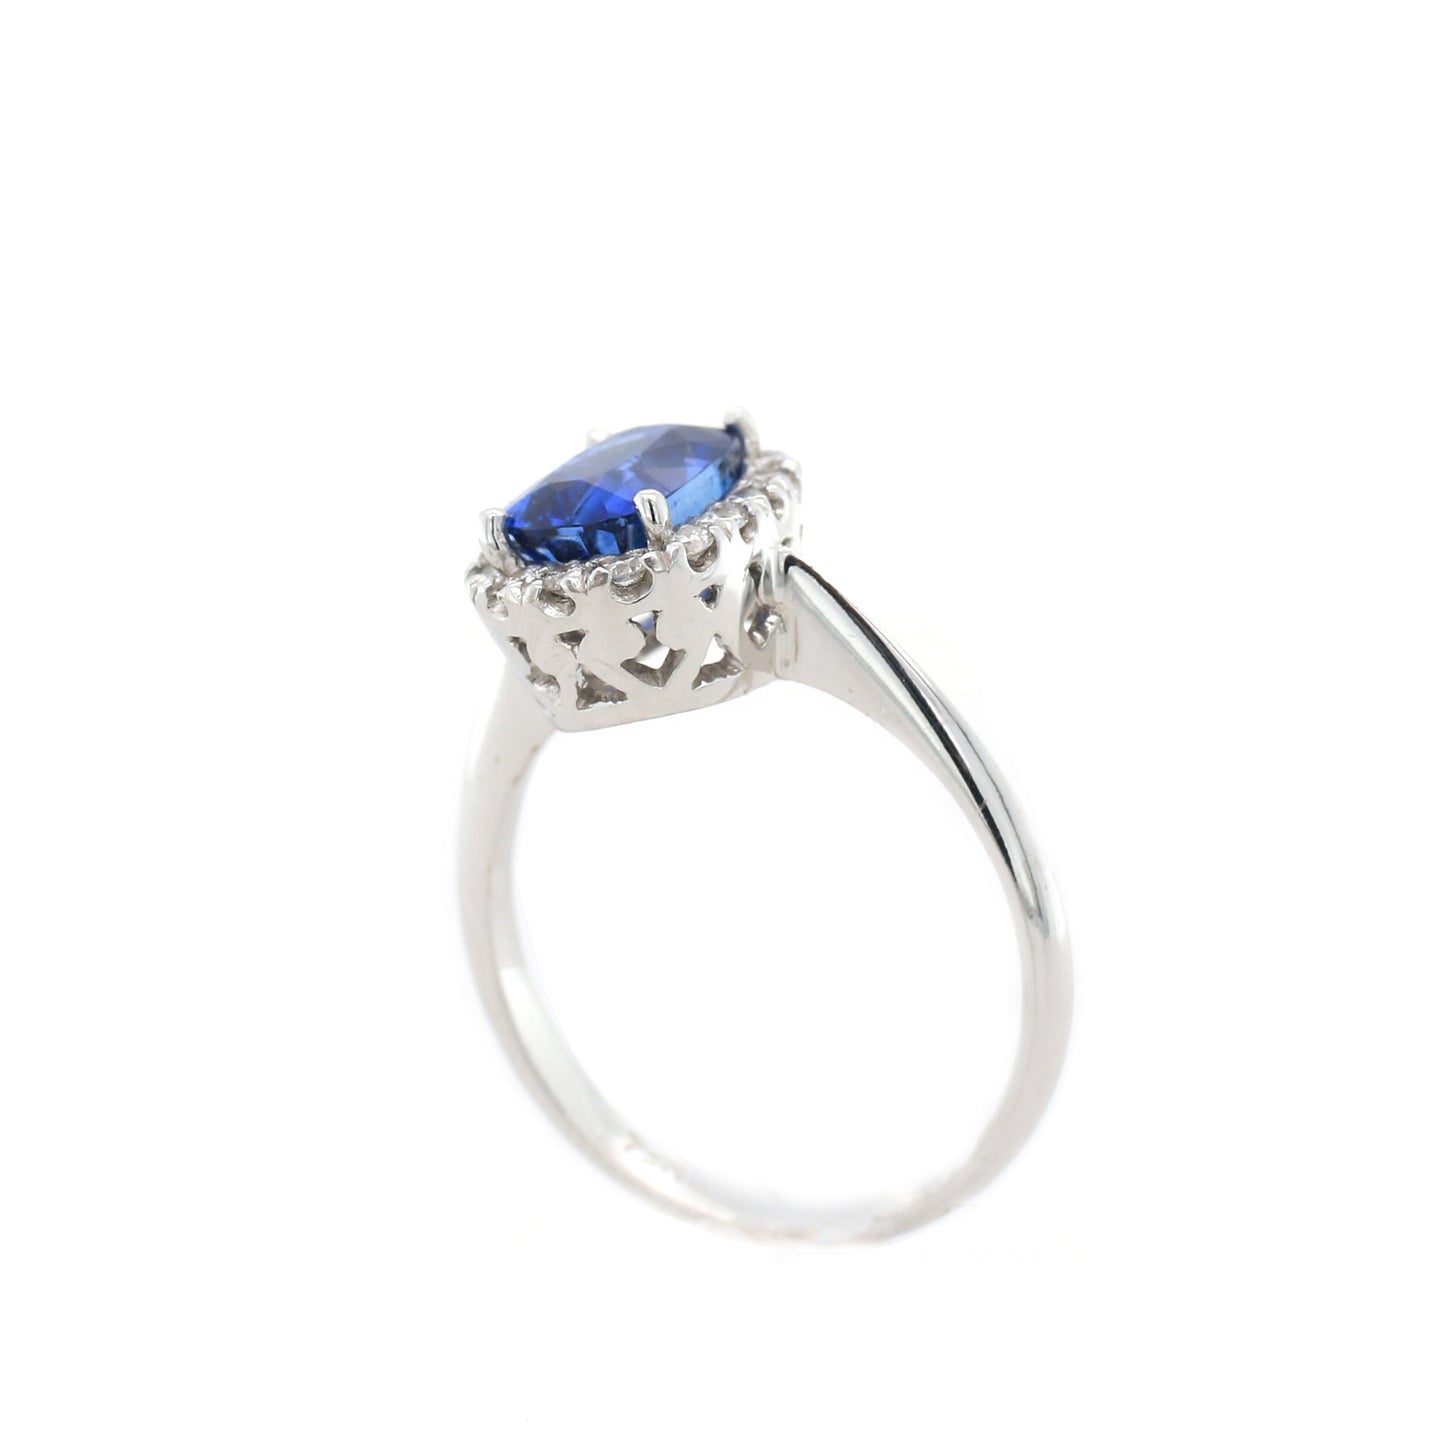 Vintage Blue Sapphire Ring - 18K White Gold  3.48 g